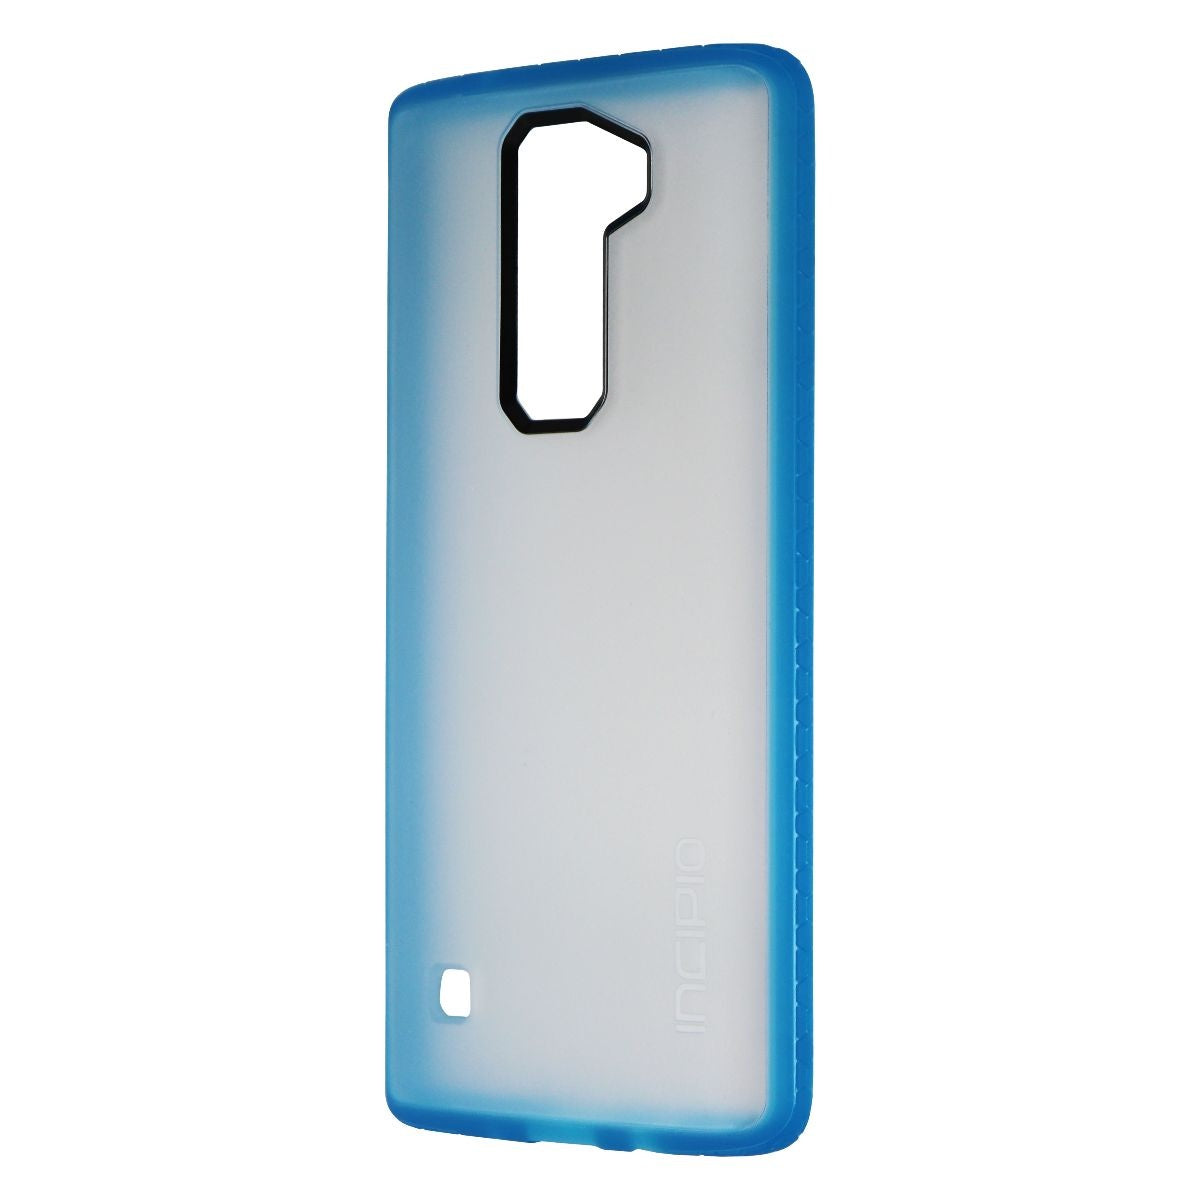 Incipio Octane Series Hardshell Hybrid Case Cover for LG K8v - Frost / Blue